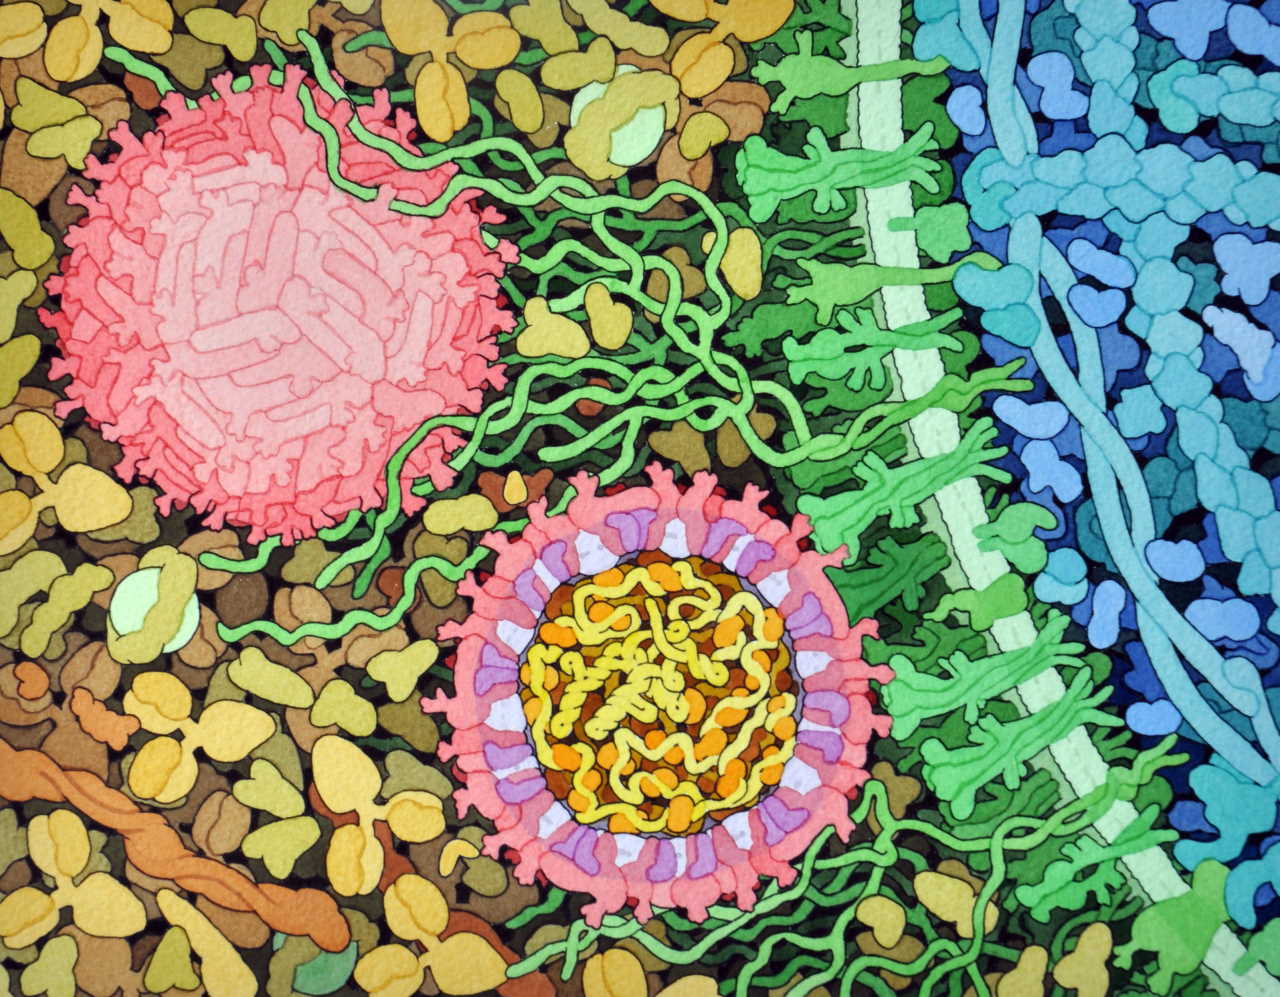 Зображення вірусів Зіка (рожеві) при взаємодії із поверхнею клітини хазяїна (зелена).&amp;nbsp;David Goodsell /&amp;nbsp;Wikimedia Commons